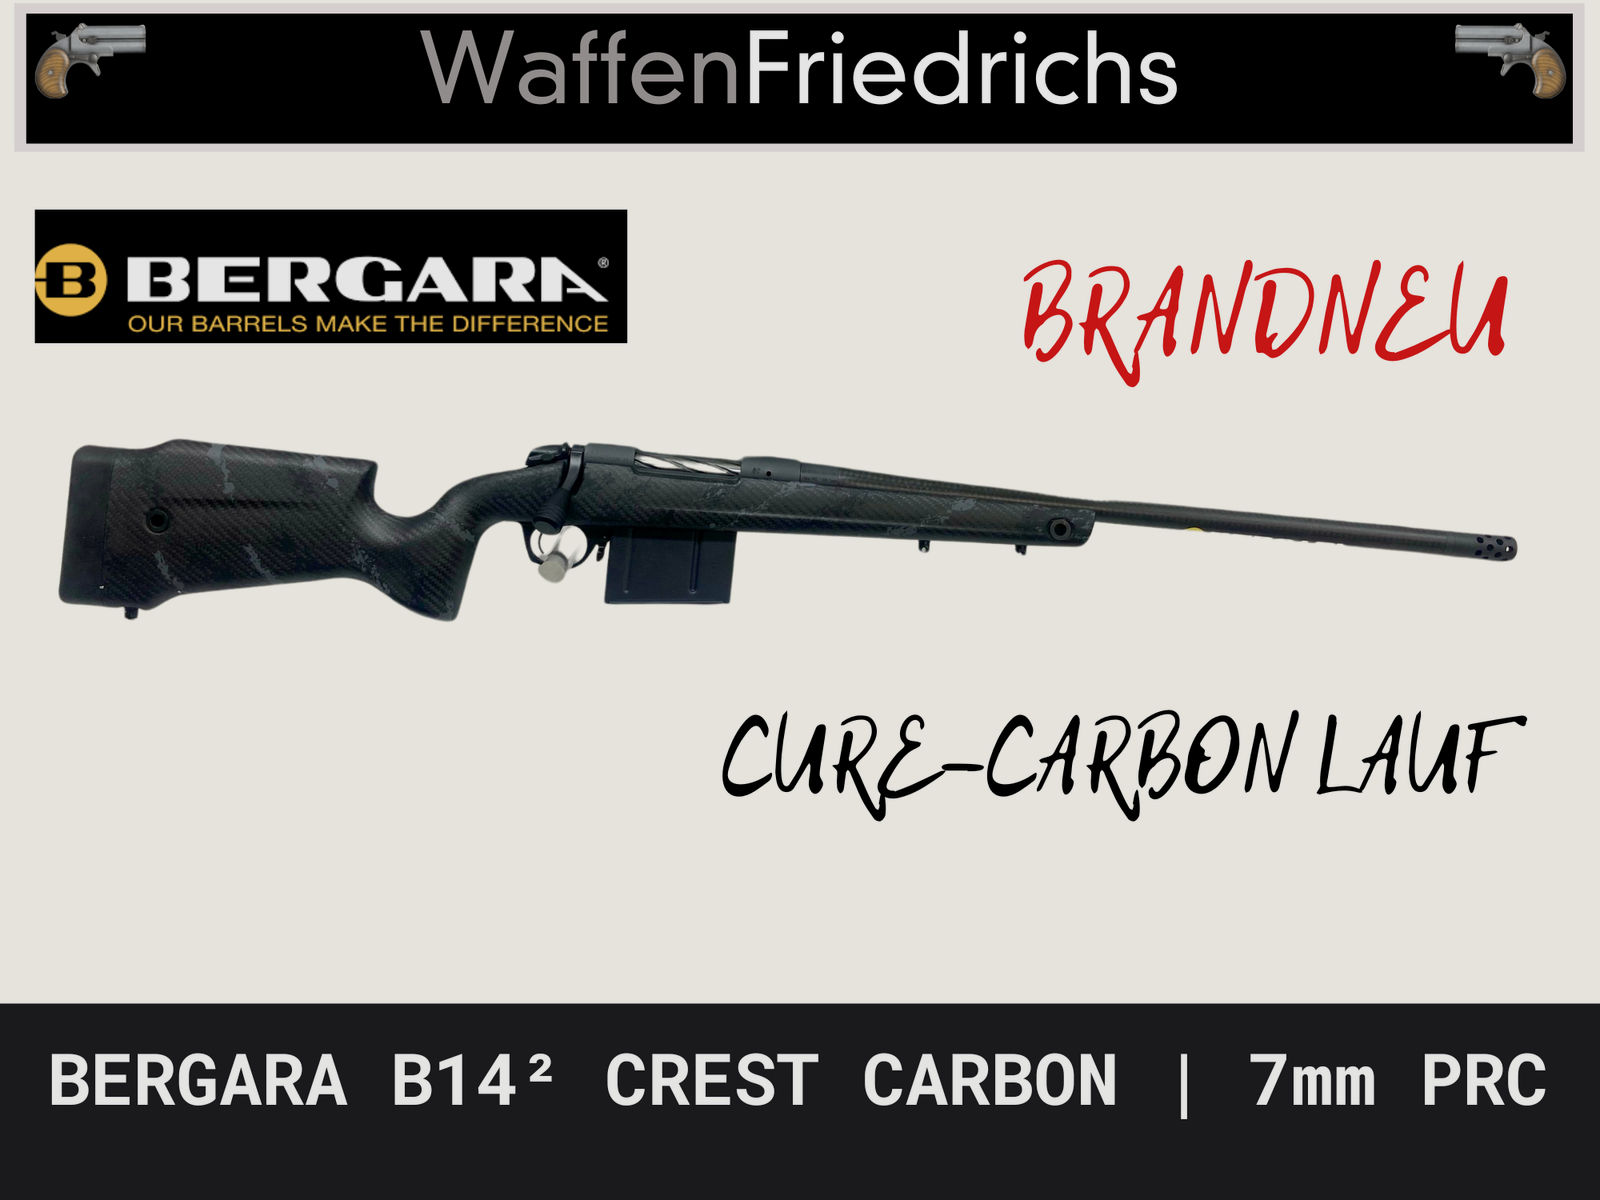 BERGARA B14² Crest Carbon 7mm PRC mit Carbonlauf und Carbonschaft - WaffenFriedrichs